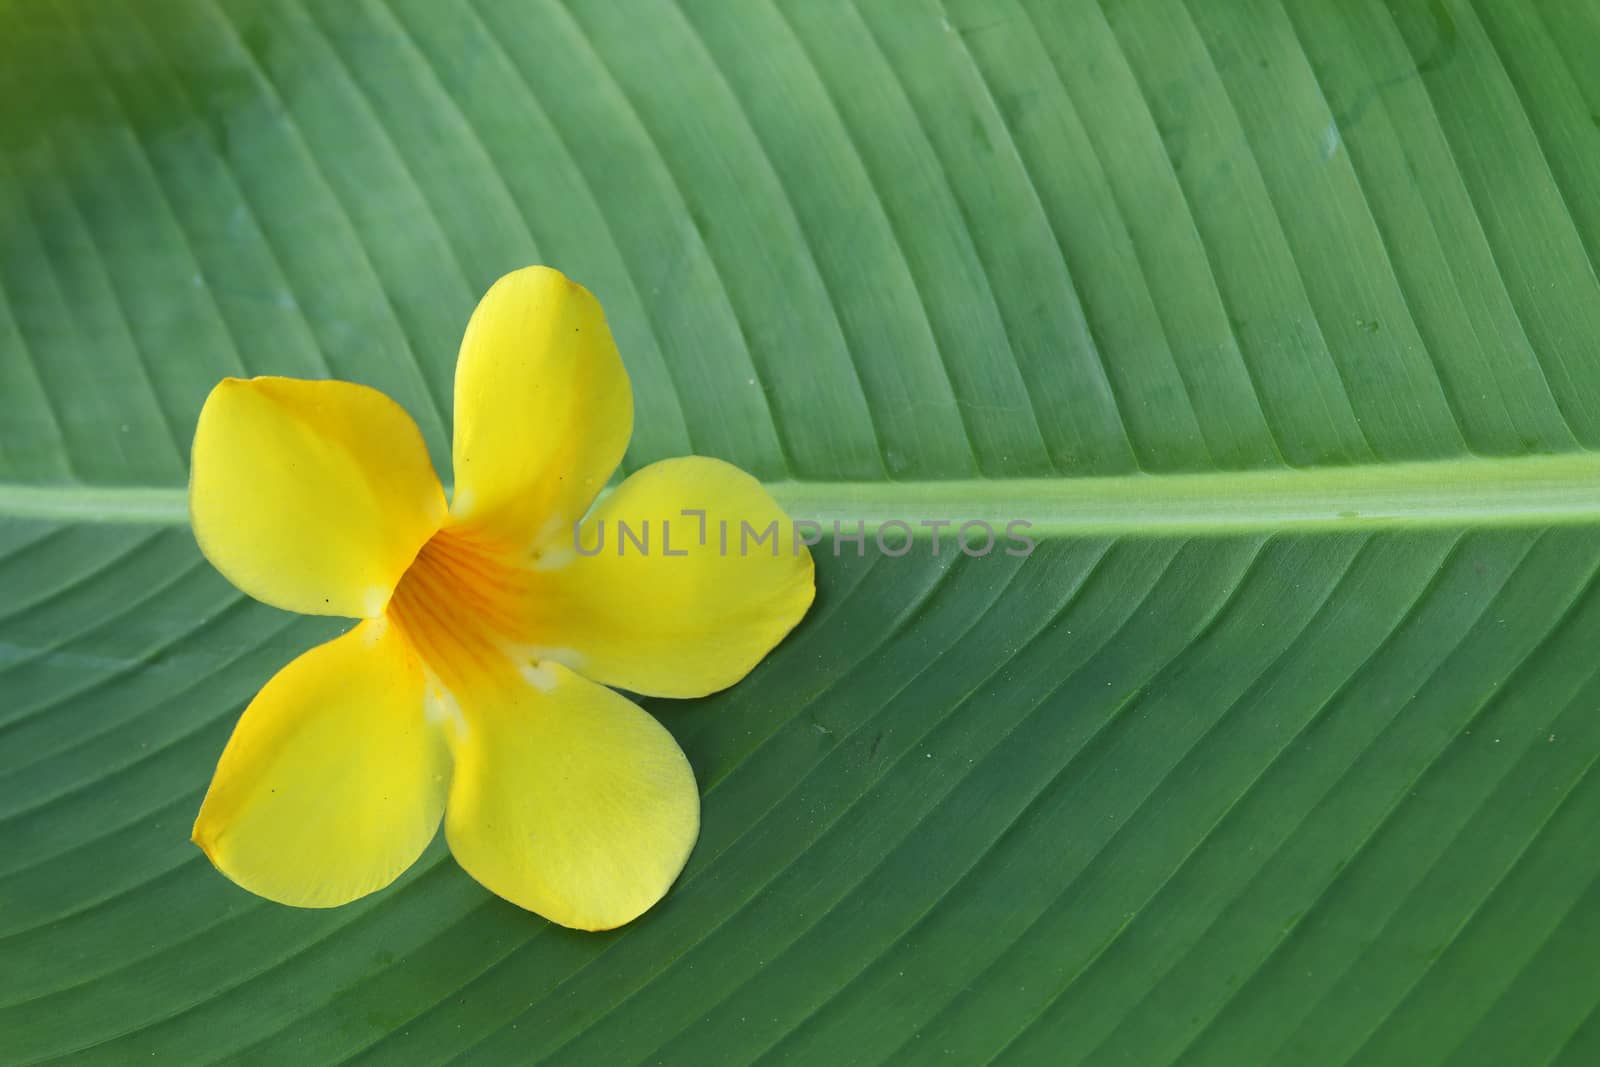 allamanda on banana leaf by kaidevil